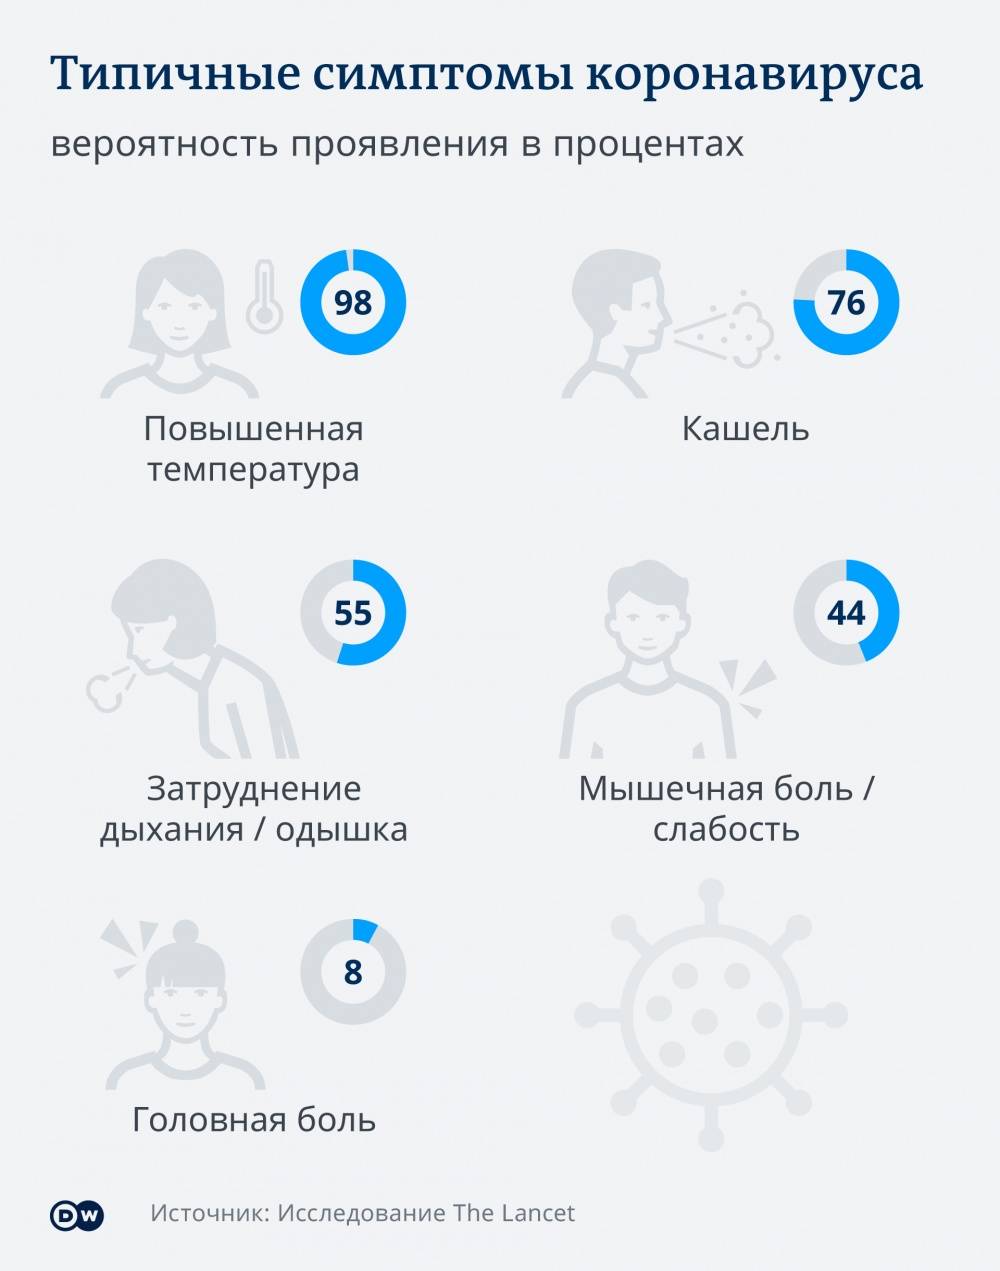 Головная боль при коронавирусе | коронавирус в россии на сегодня онлайн: в мире по странам, в россии по городам